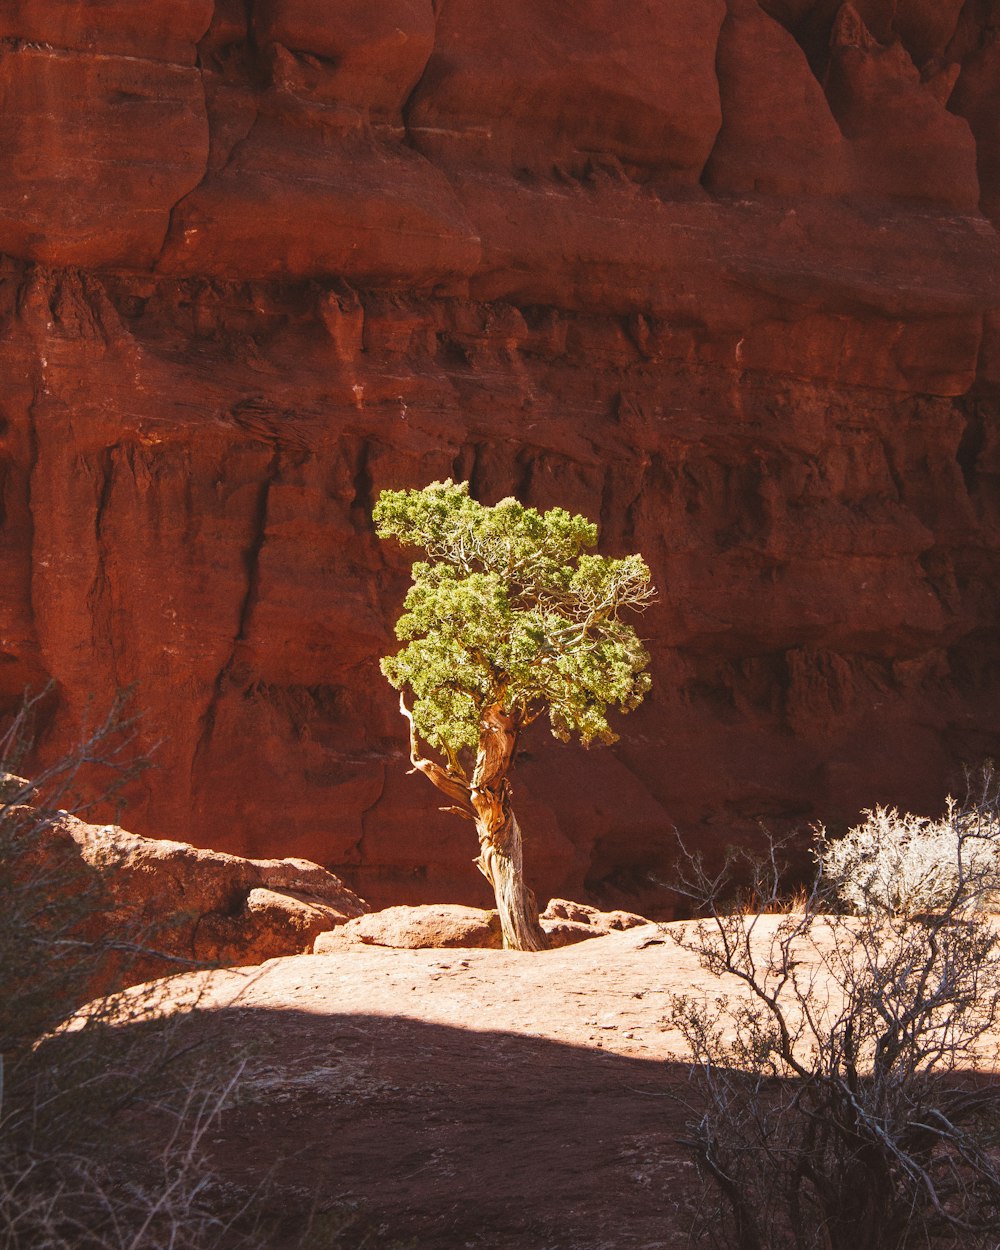 albero a foglia verde accanto alla roccia